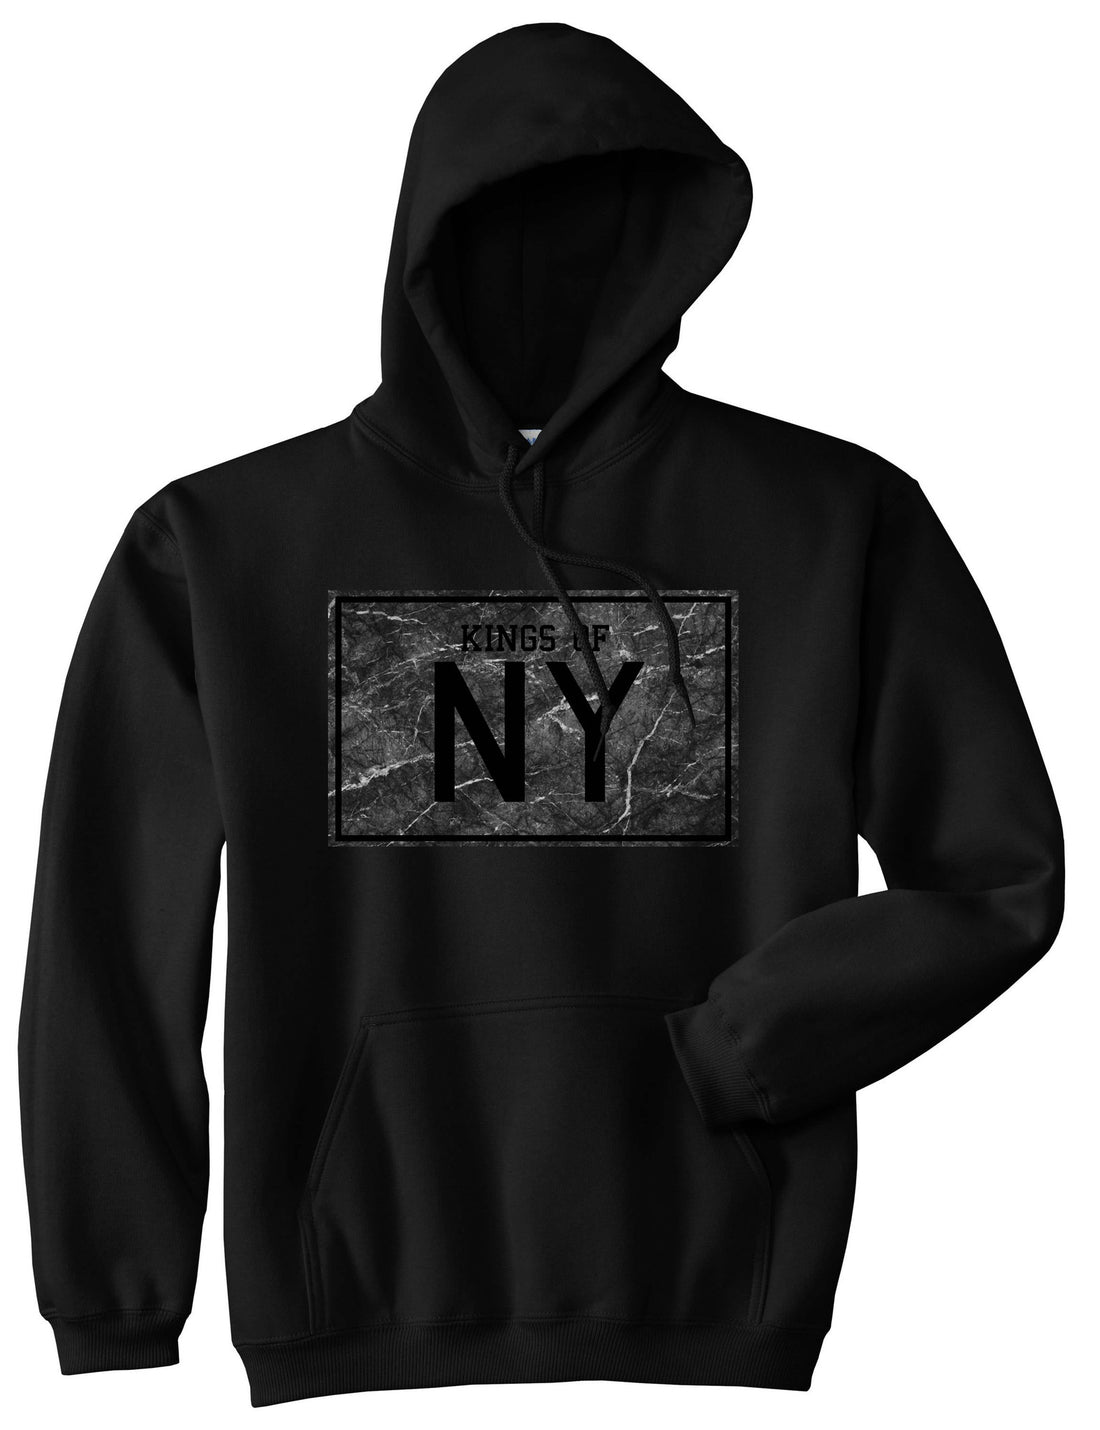 Granite NY Logo Print Boys Kids Pullover Hoodie Hoody in Black by Kings Of NY